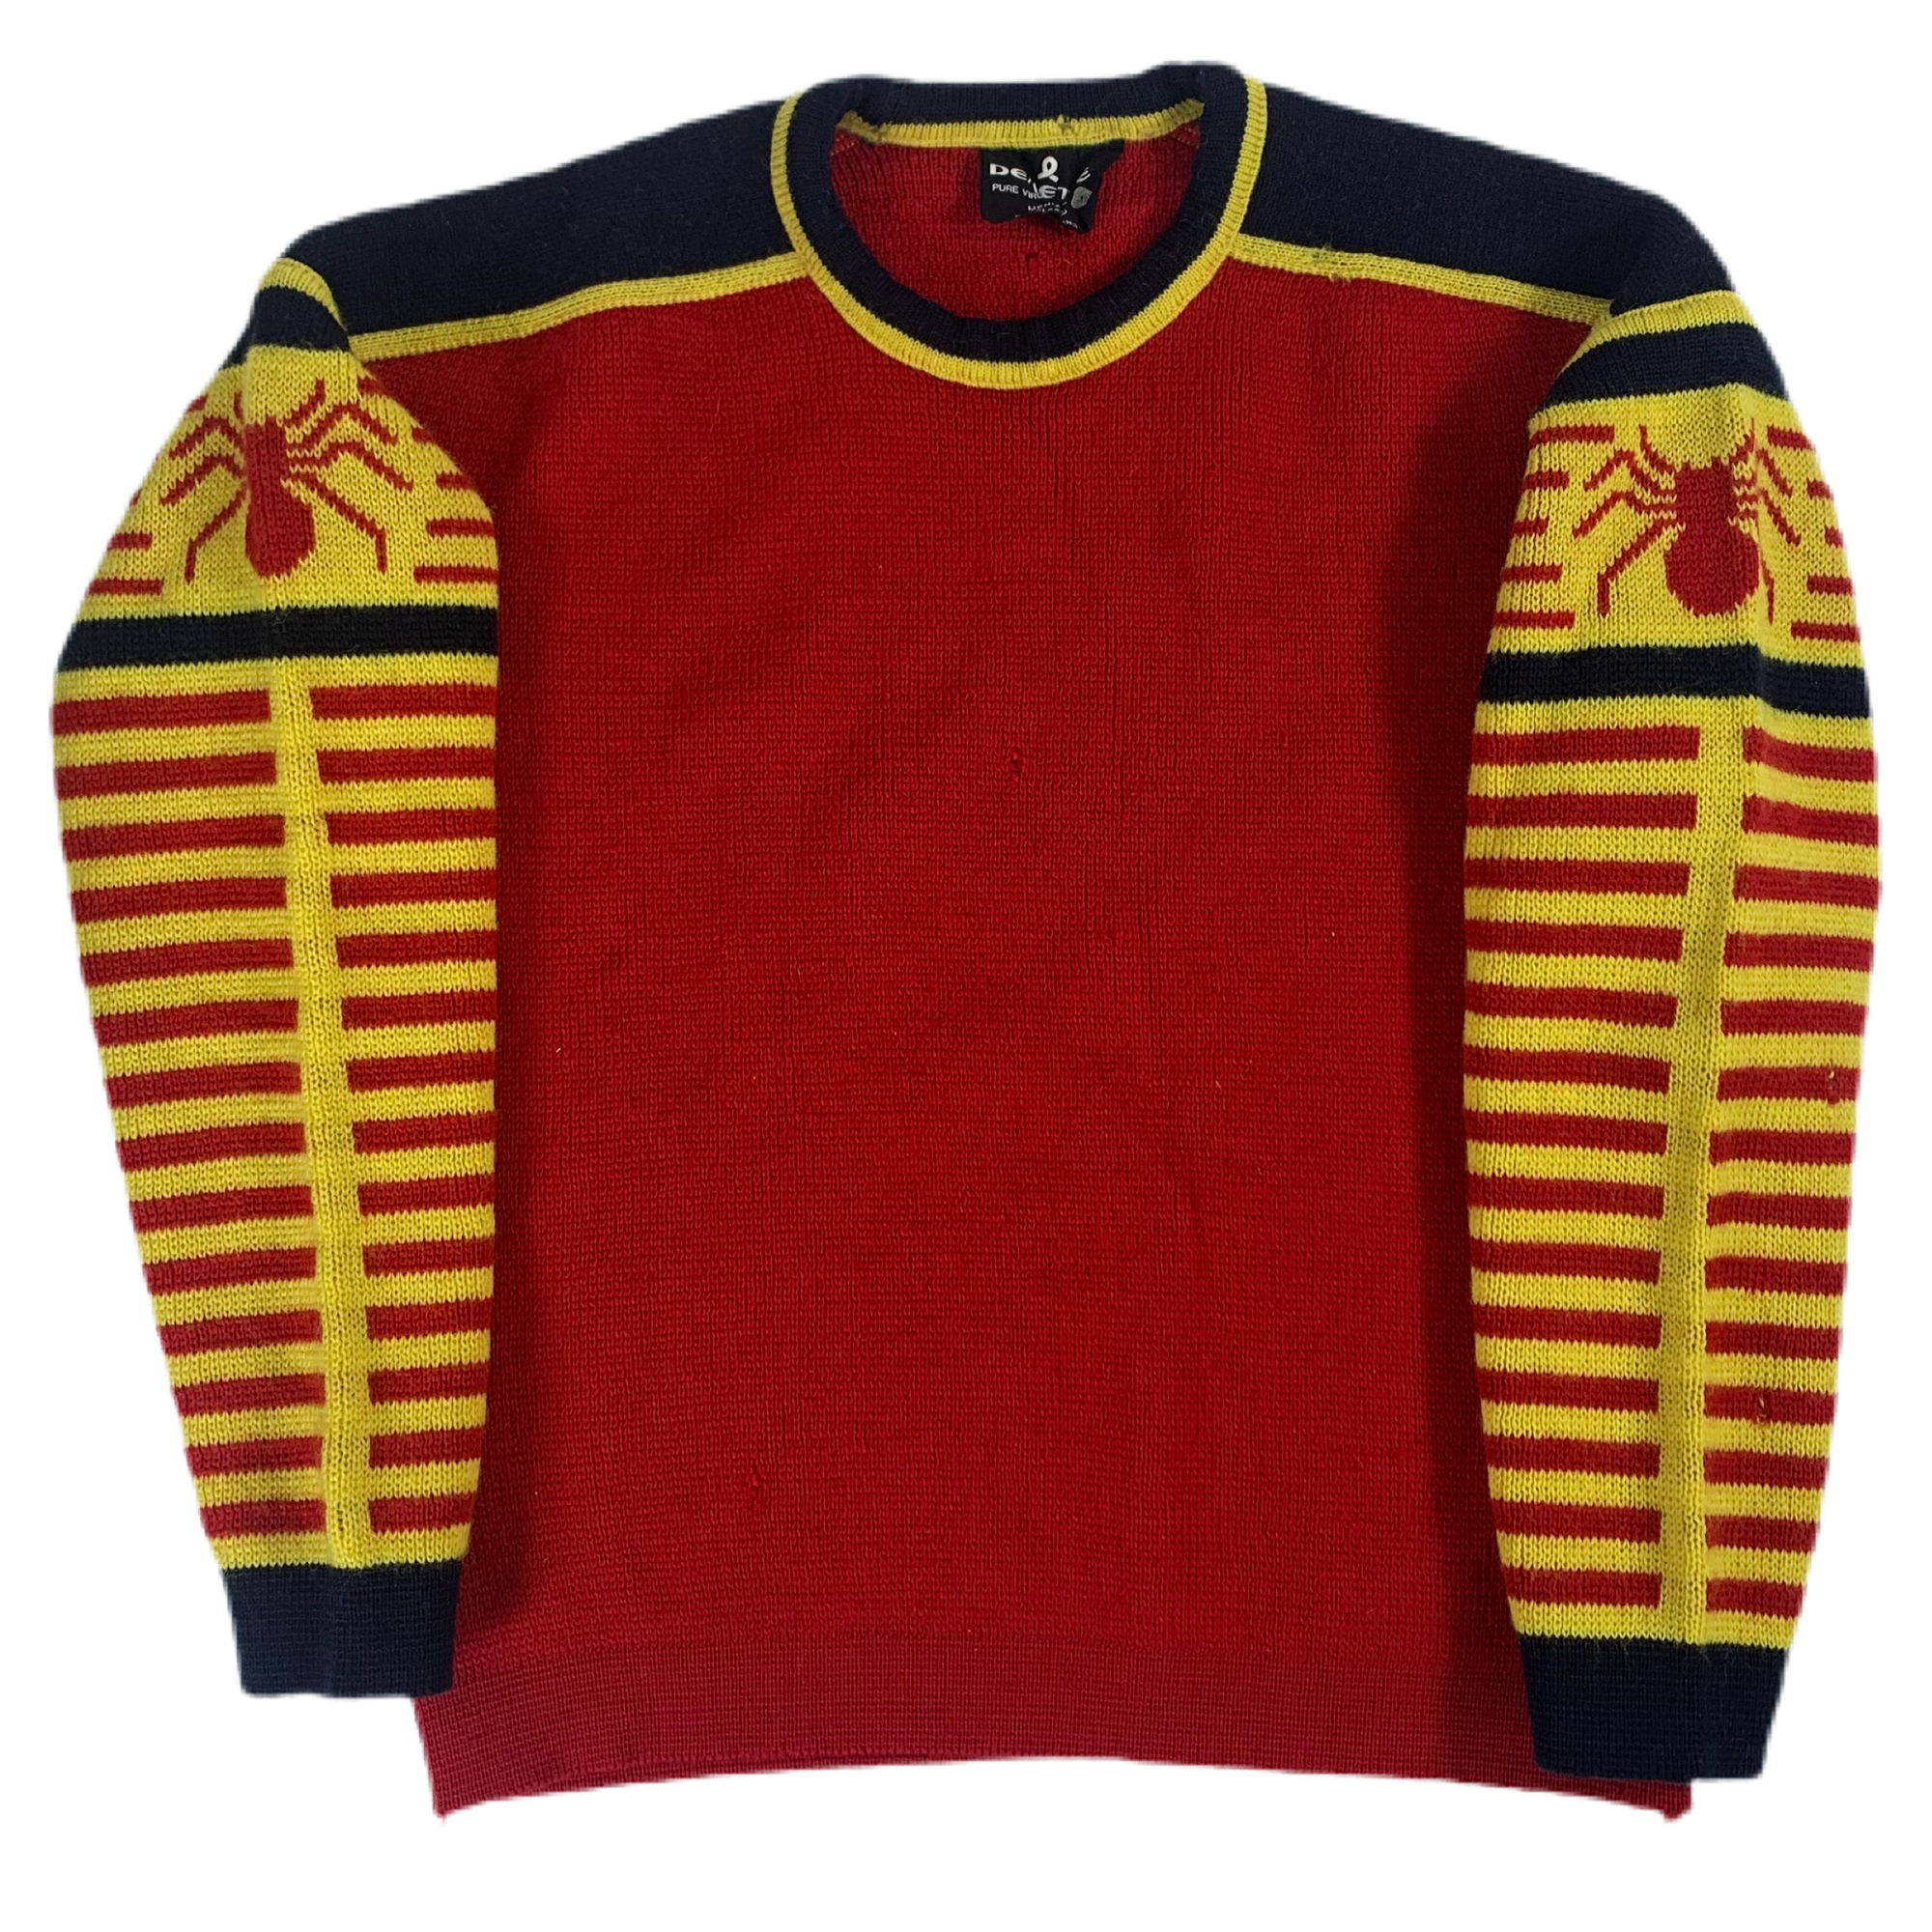 Vintage SOS Sportswear Wool Ski Sweater, Joint Custody